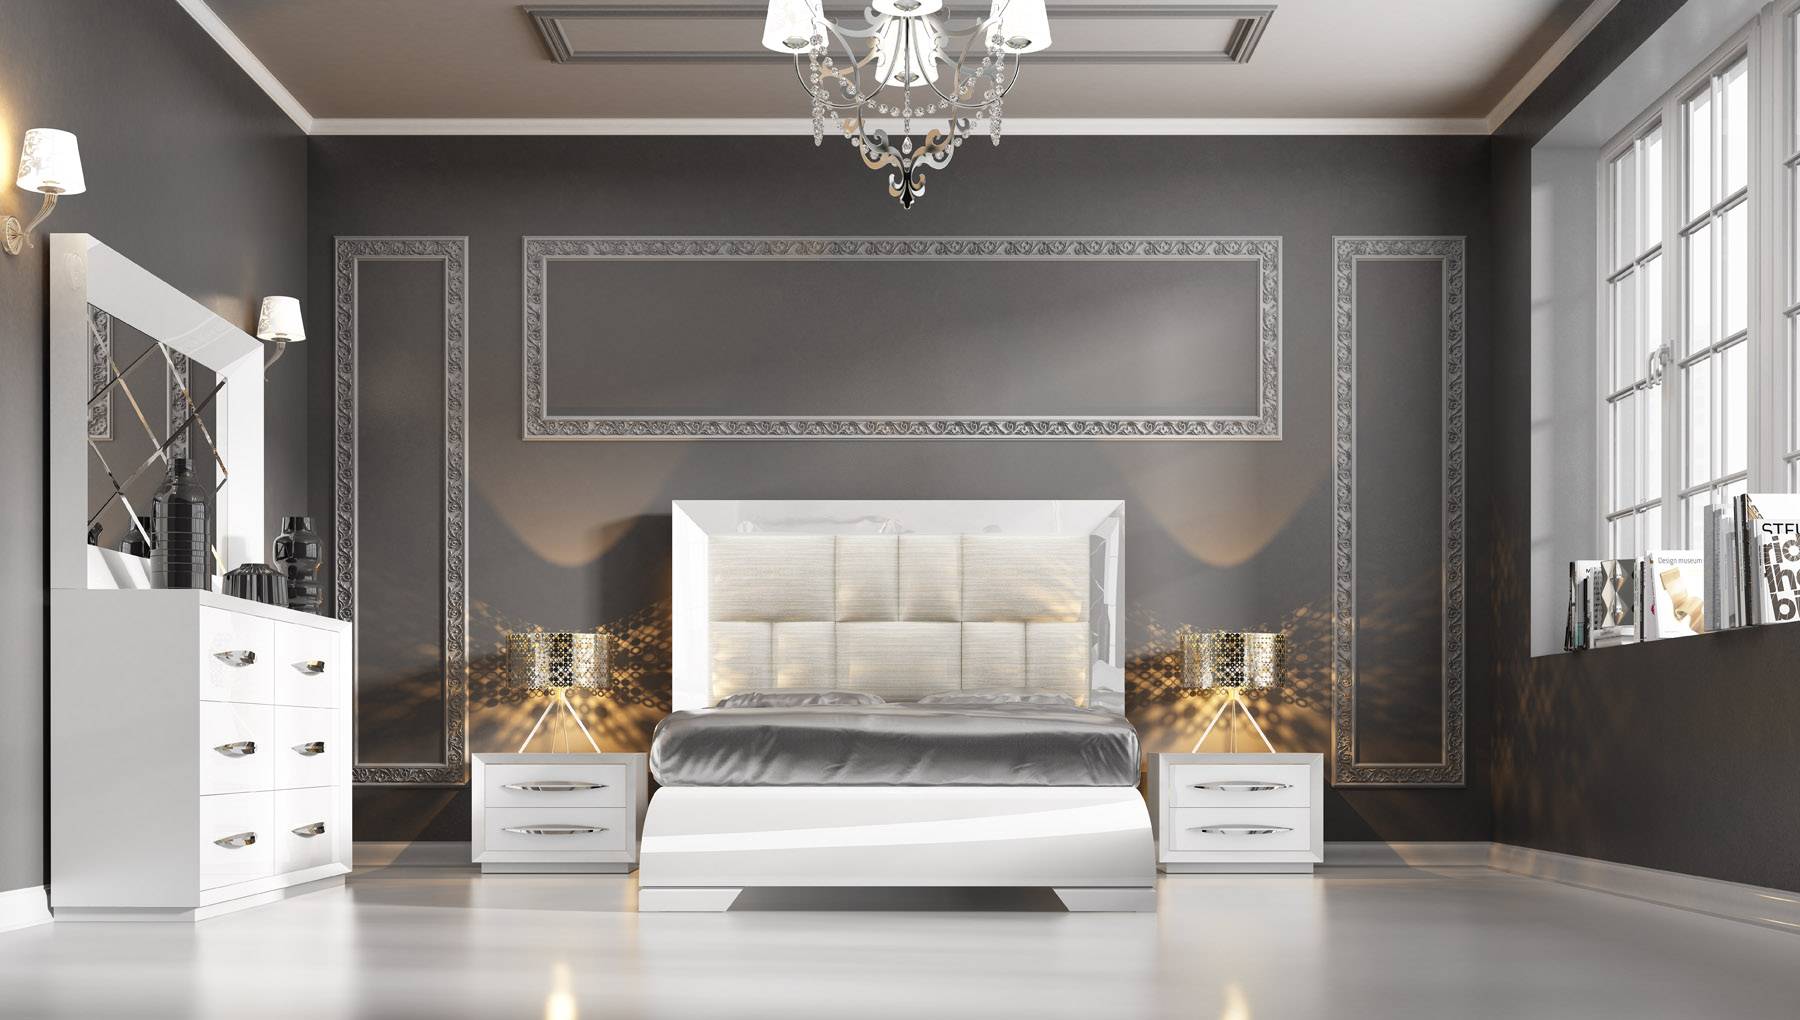 Made in Spain Wood Luxury Bedroom Furniture Sets